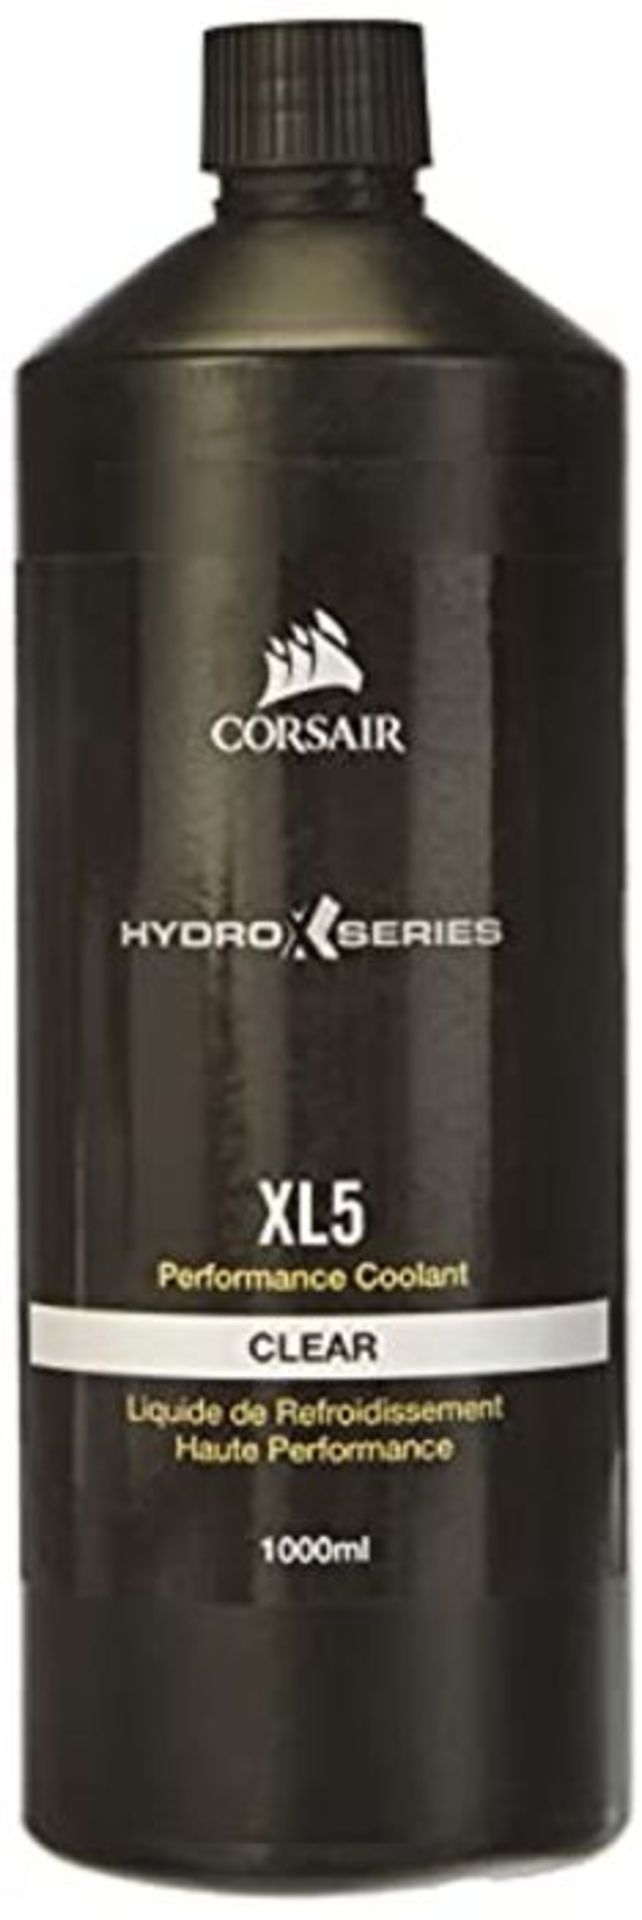 Corsair Hydro X Series, XL5 Performance Coolant, 1 Litre (Vibrant Translucent Colour,